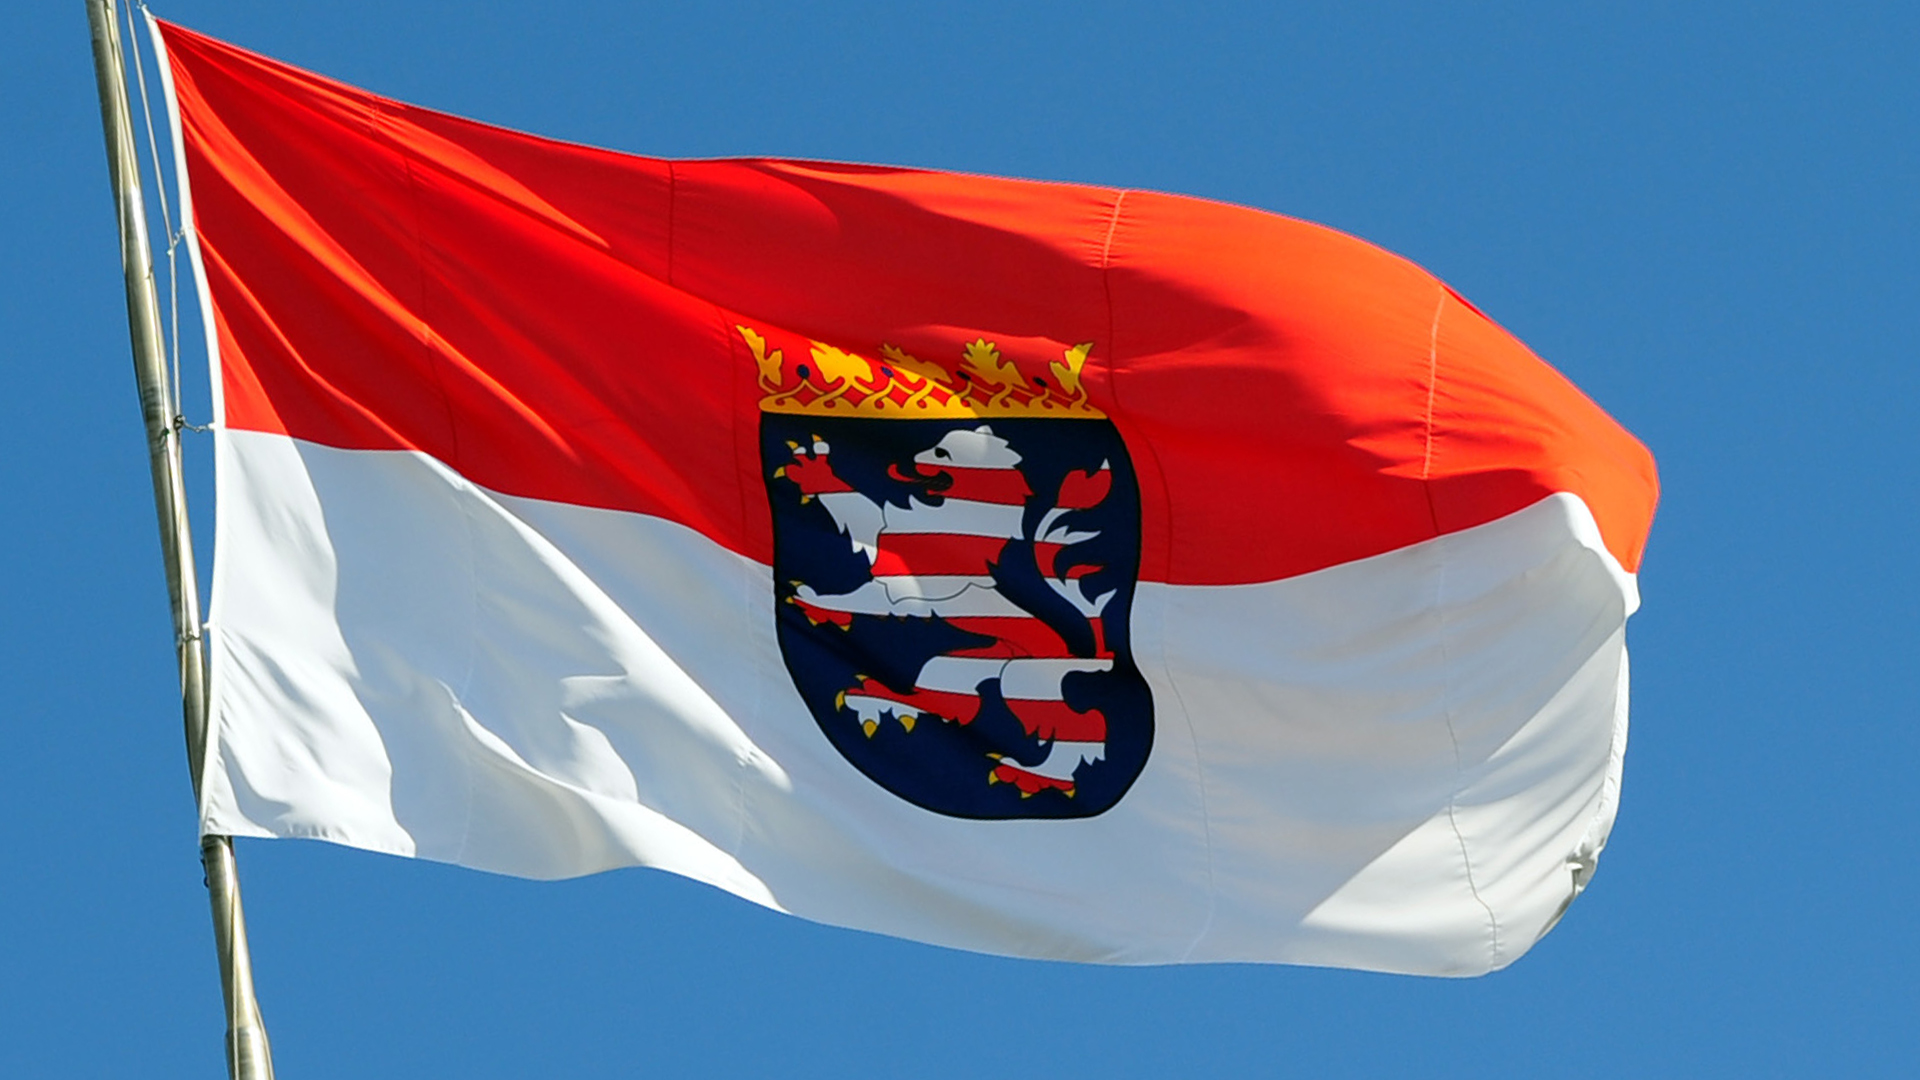 Fahne des Bundeslandes Hessen | picture alliance / dpa